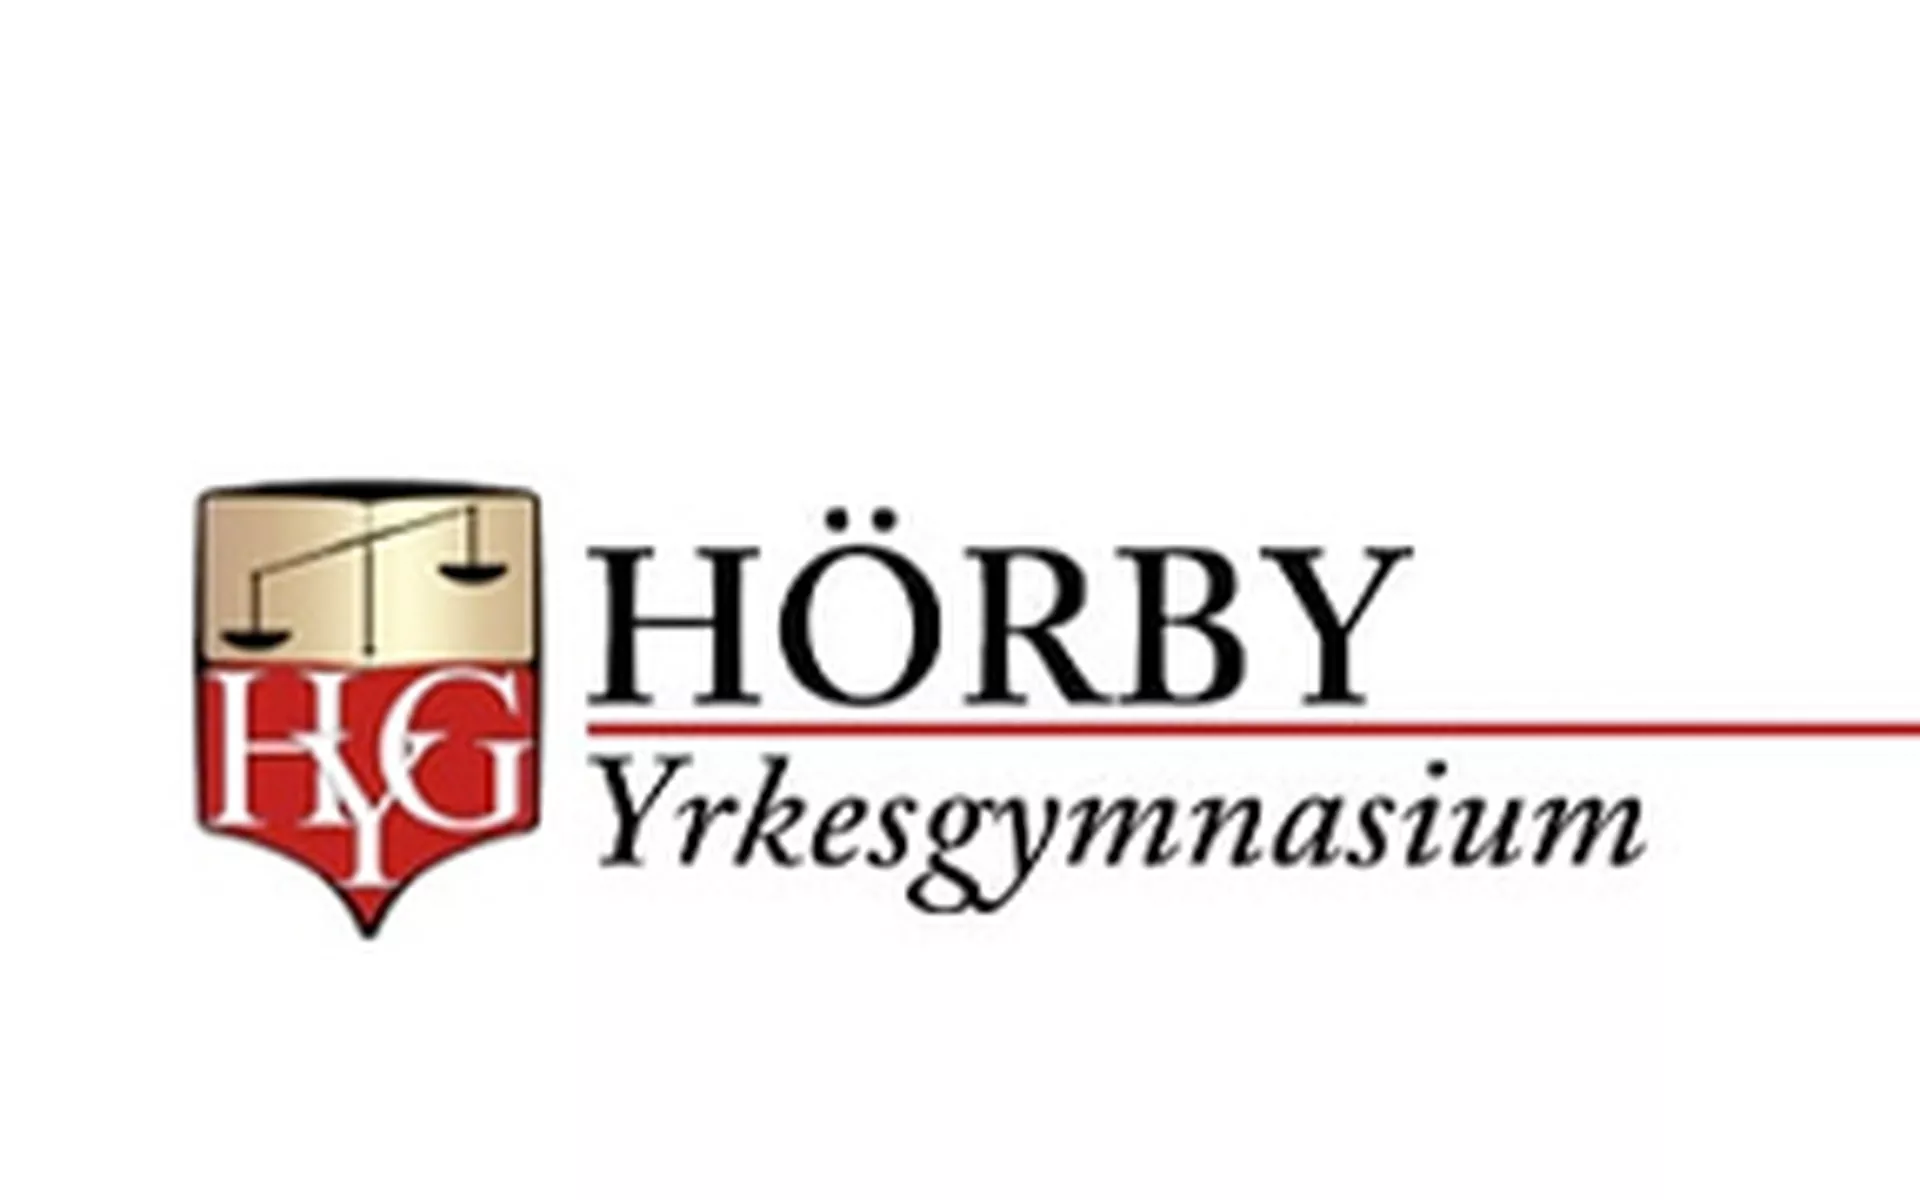 Hörby Yrkesgymnasium